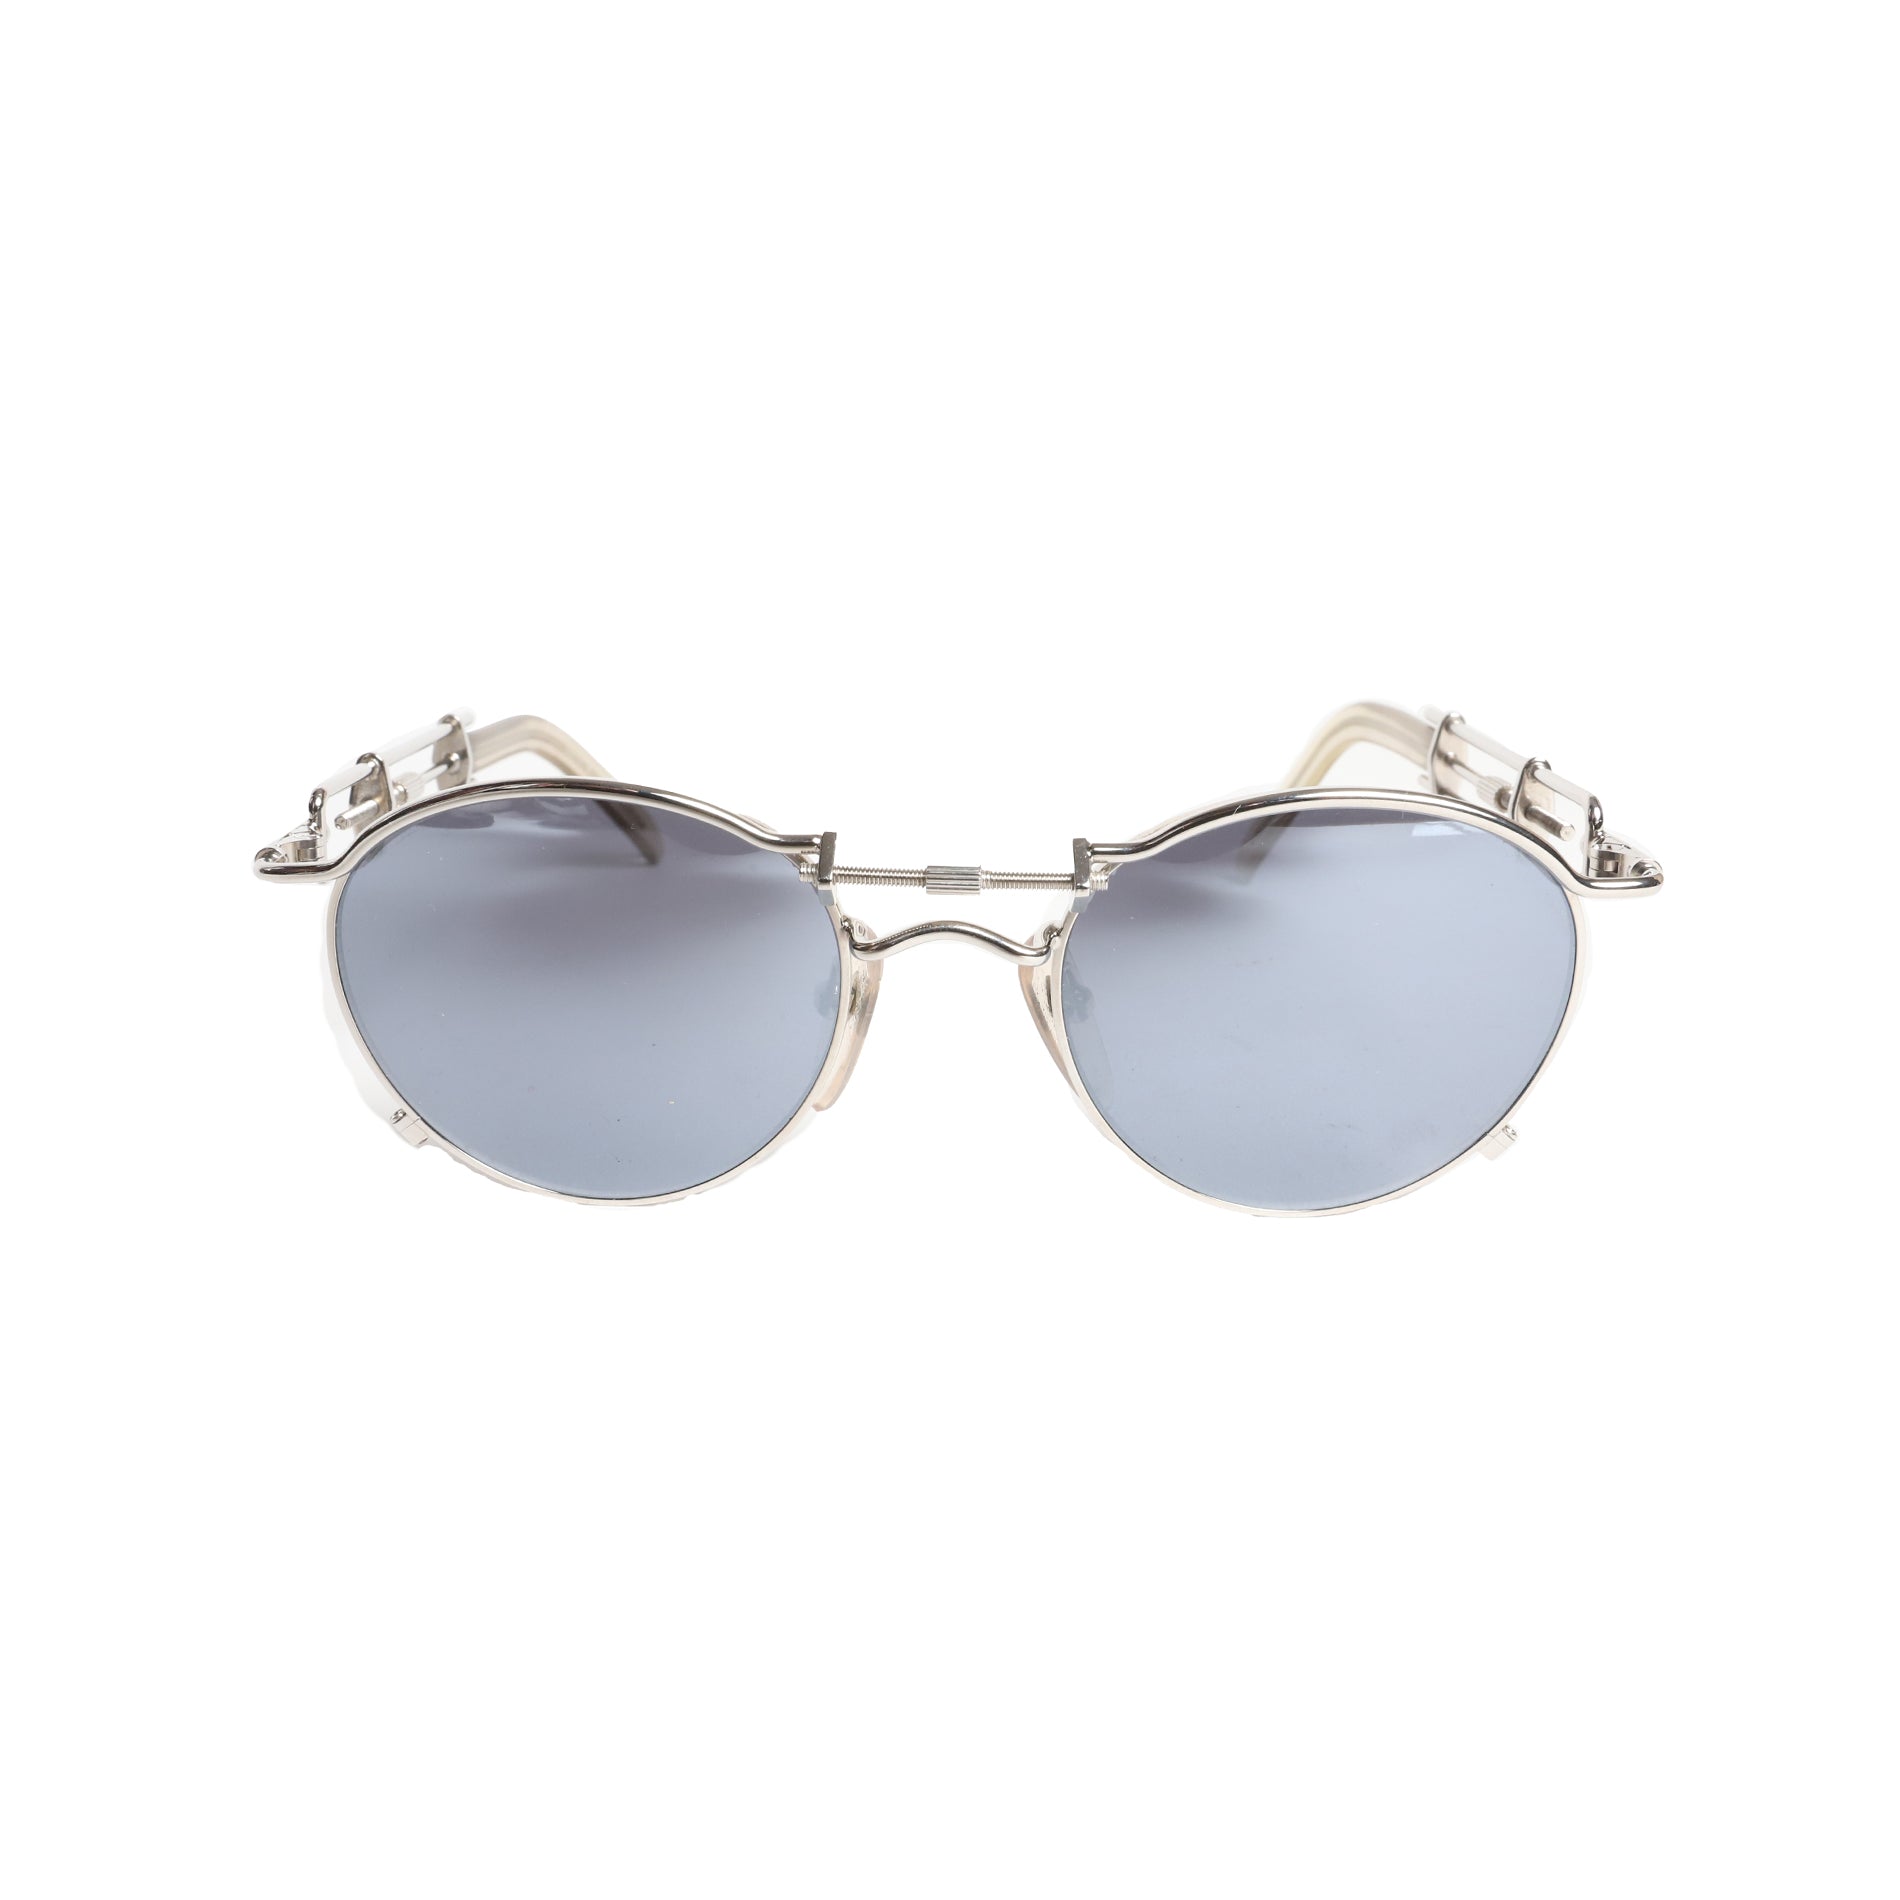 Jean Paul Gaultier 1991 Sunglasses "56-0174"